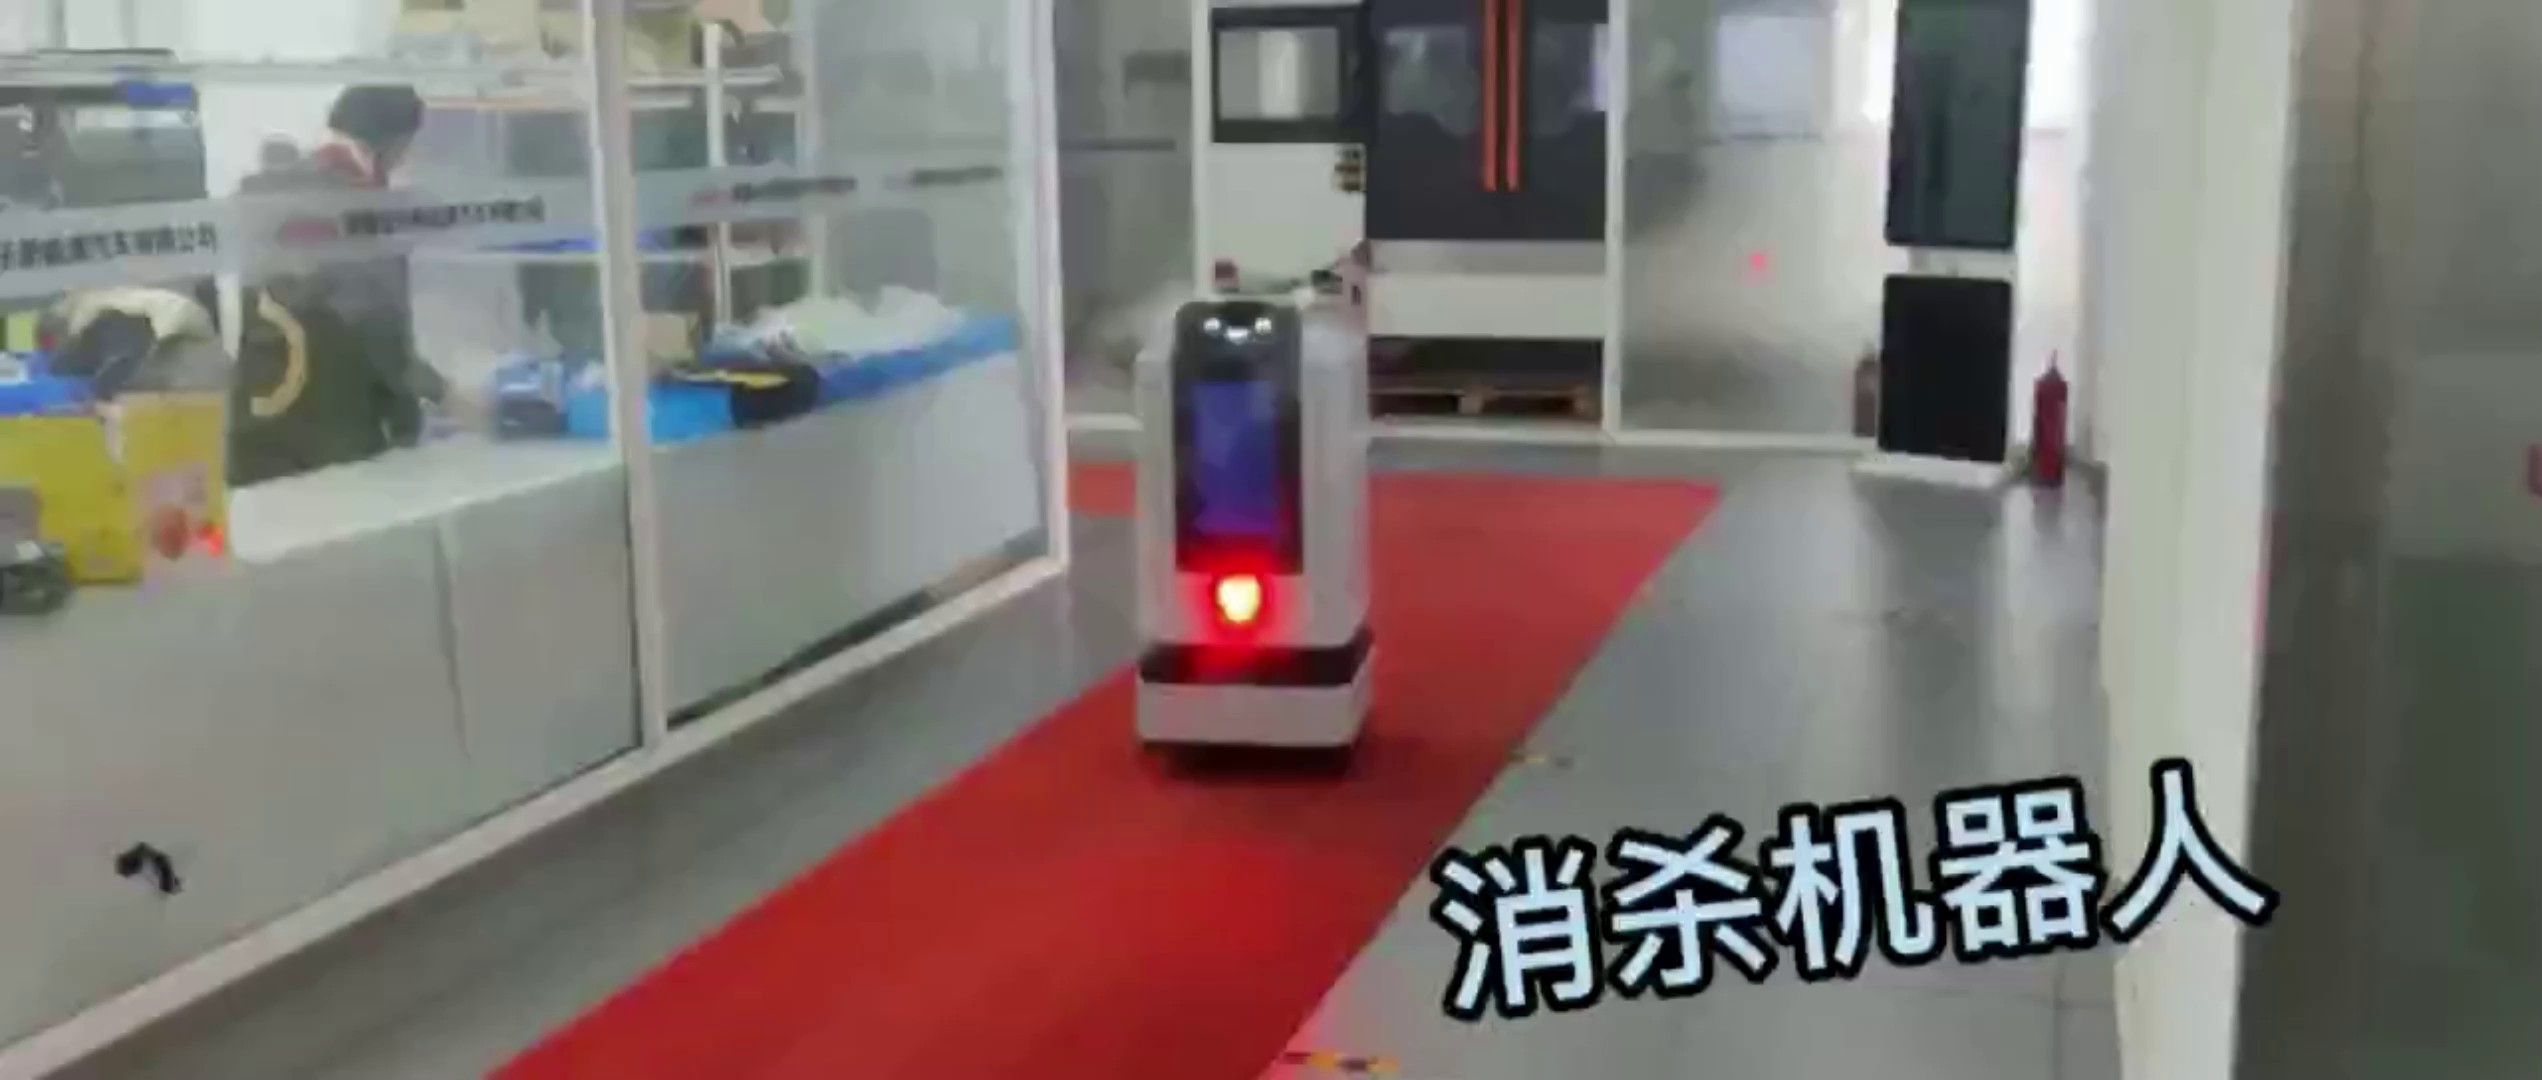 江苏麦克纳姆轮机器人前景,机器人